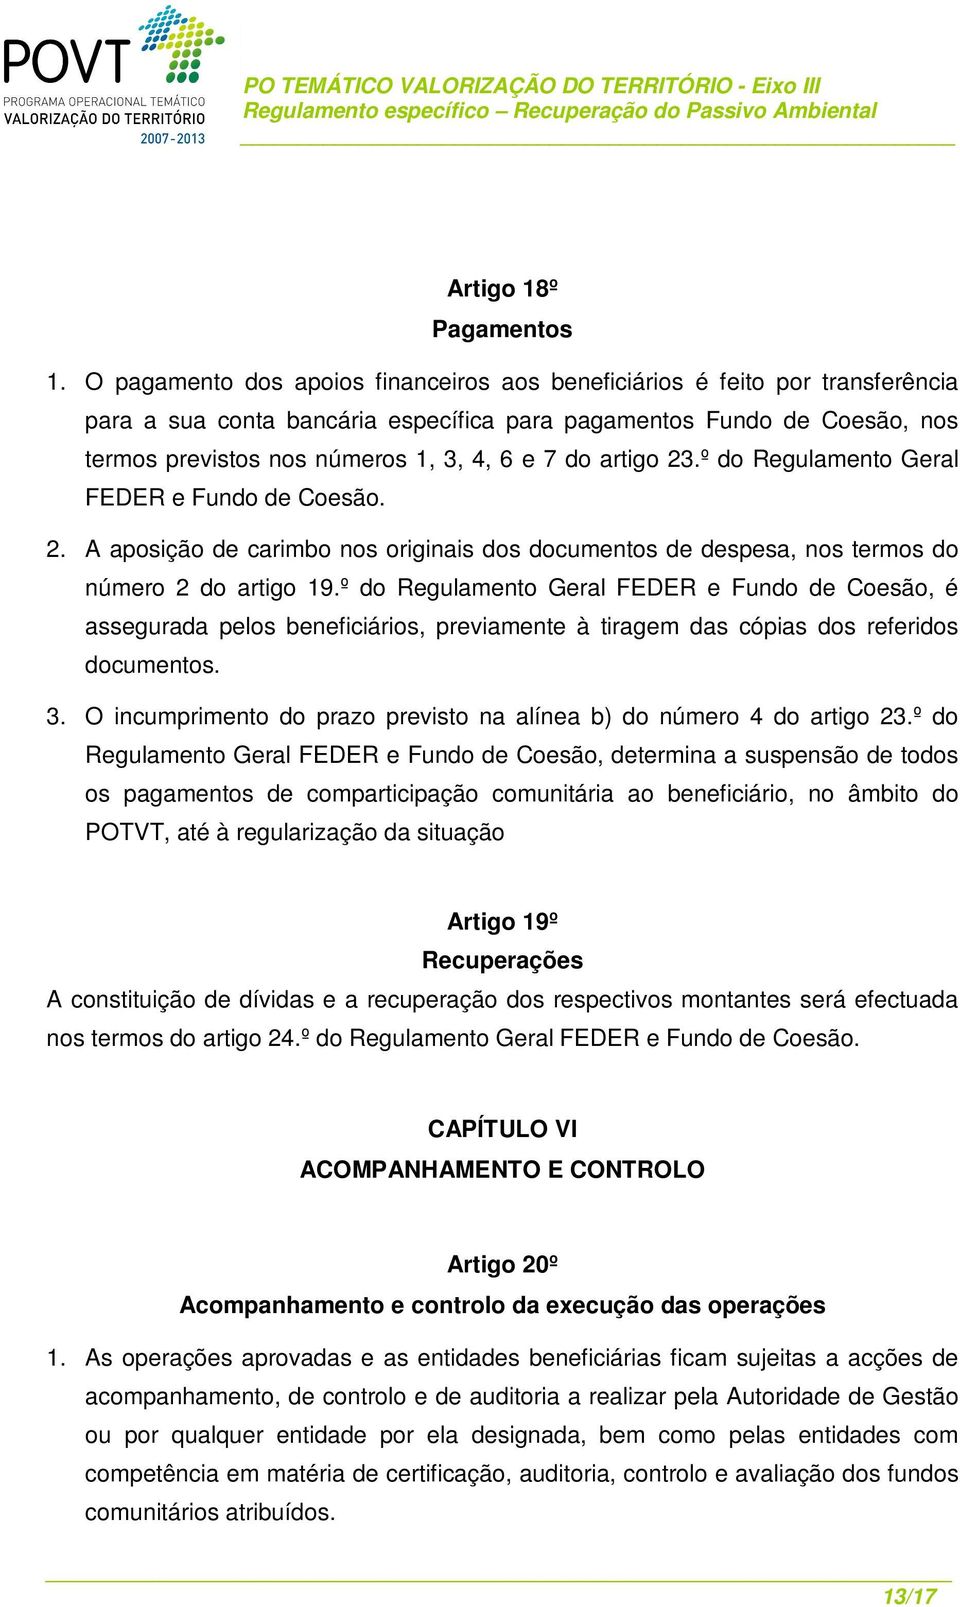 artigo 23.º do Regulamento Geral FEDER e Fundo de Coesão. 2. A aposição de carimbo nos originais dos documentos de despesa, nos termos do número 2 do artigo 19.